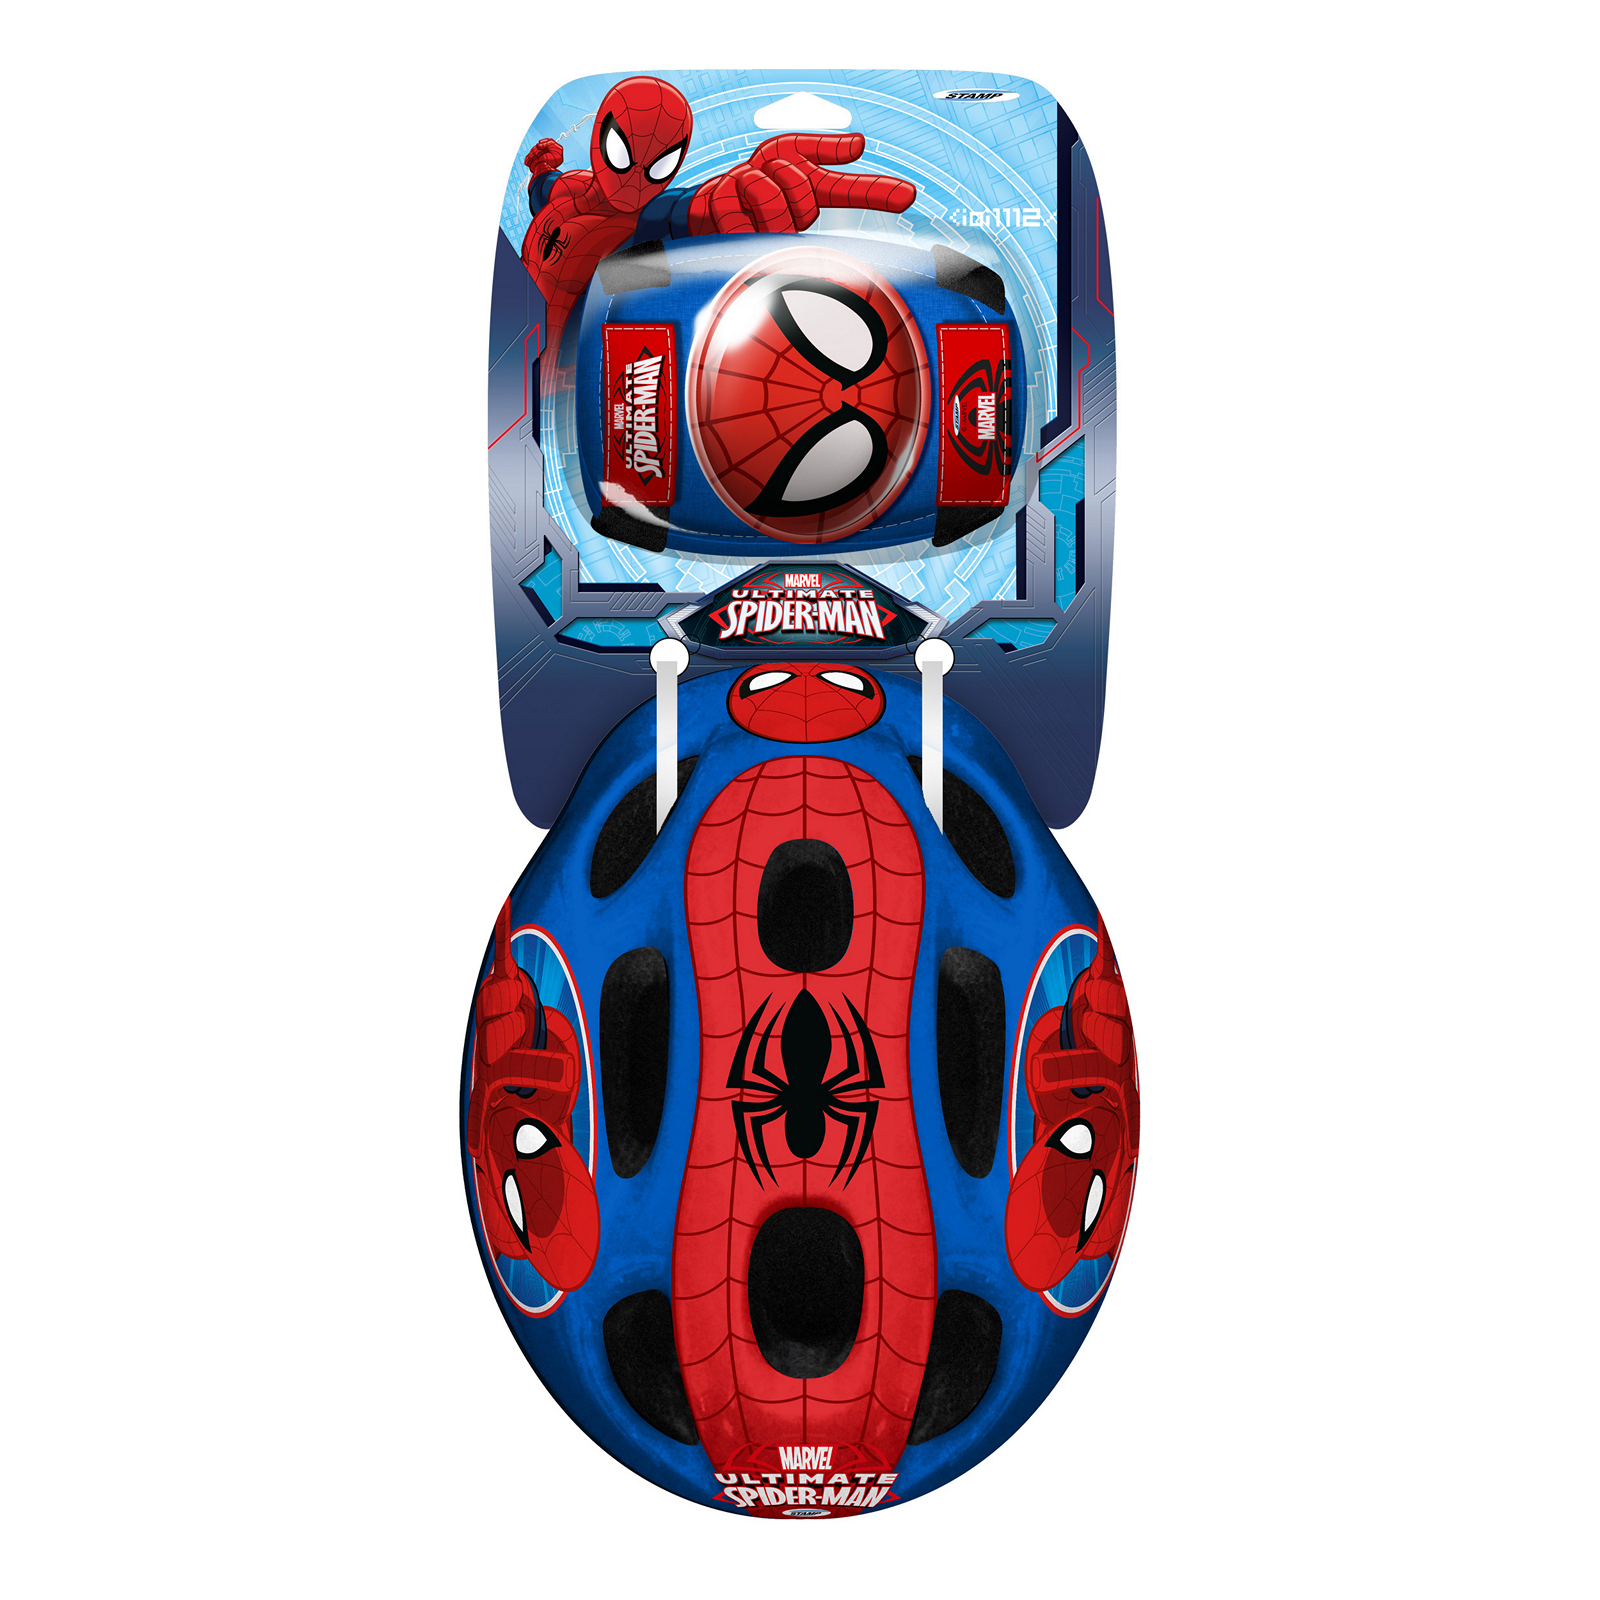 Capacete E Proteções Criança Spider-man Tam. 53-56 Cm